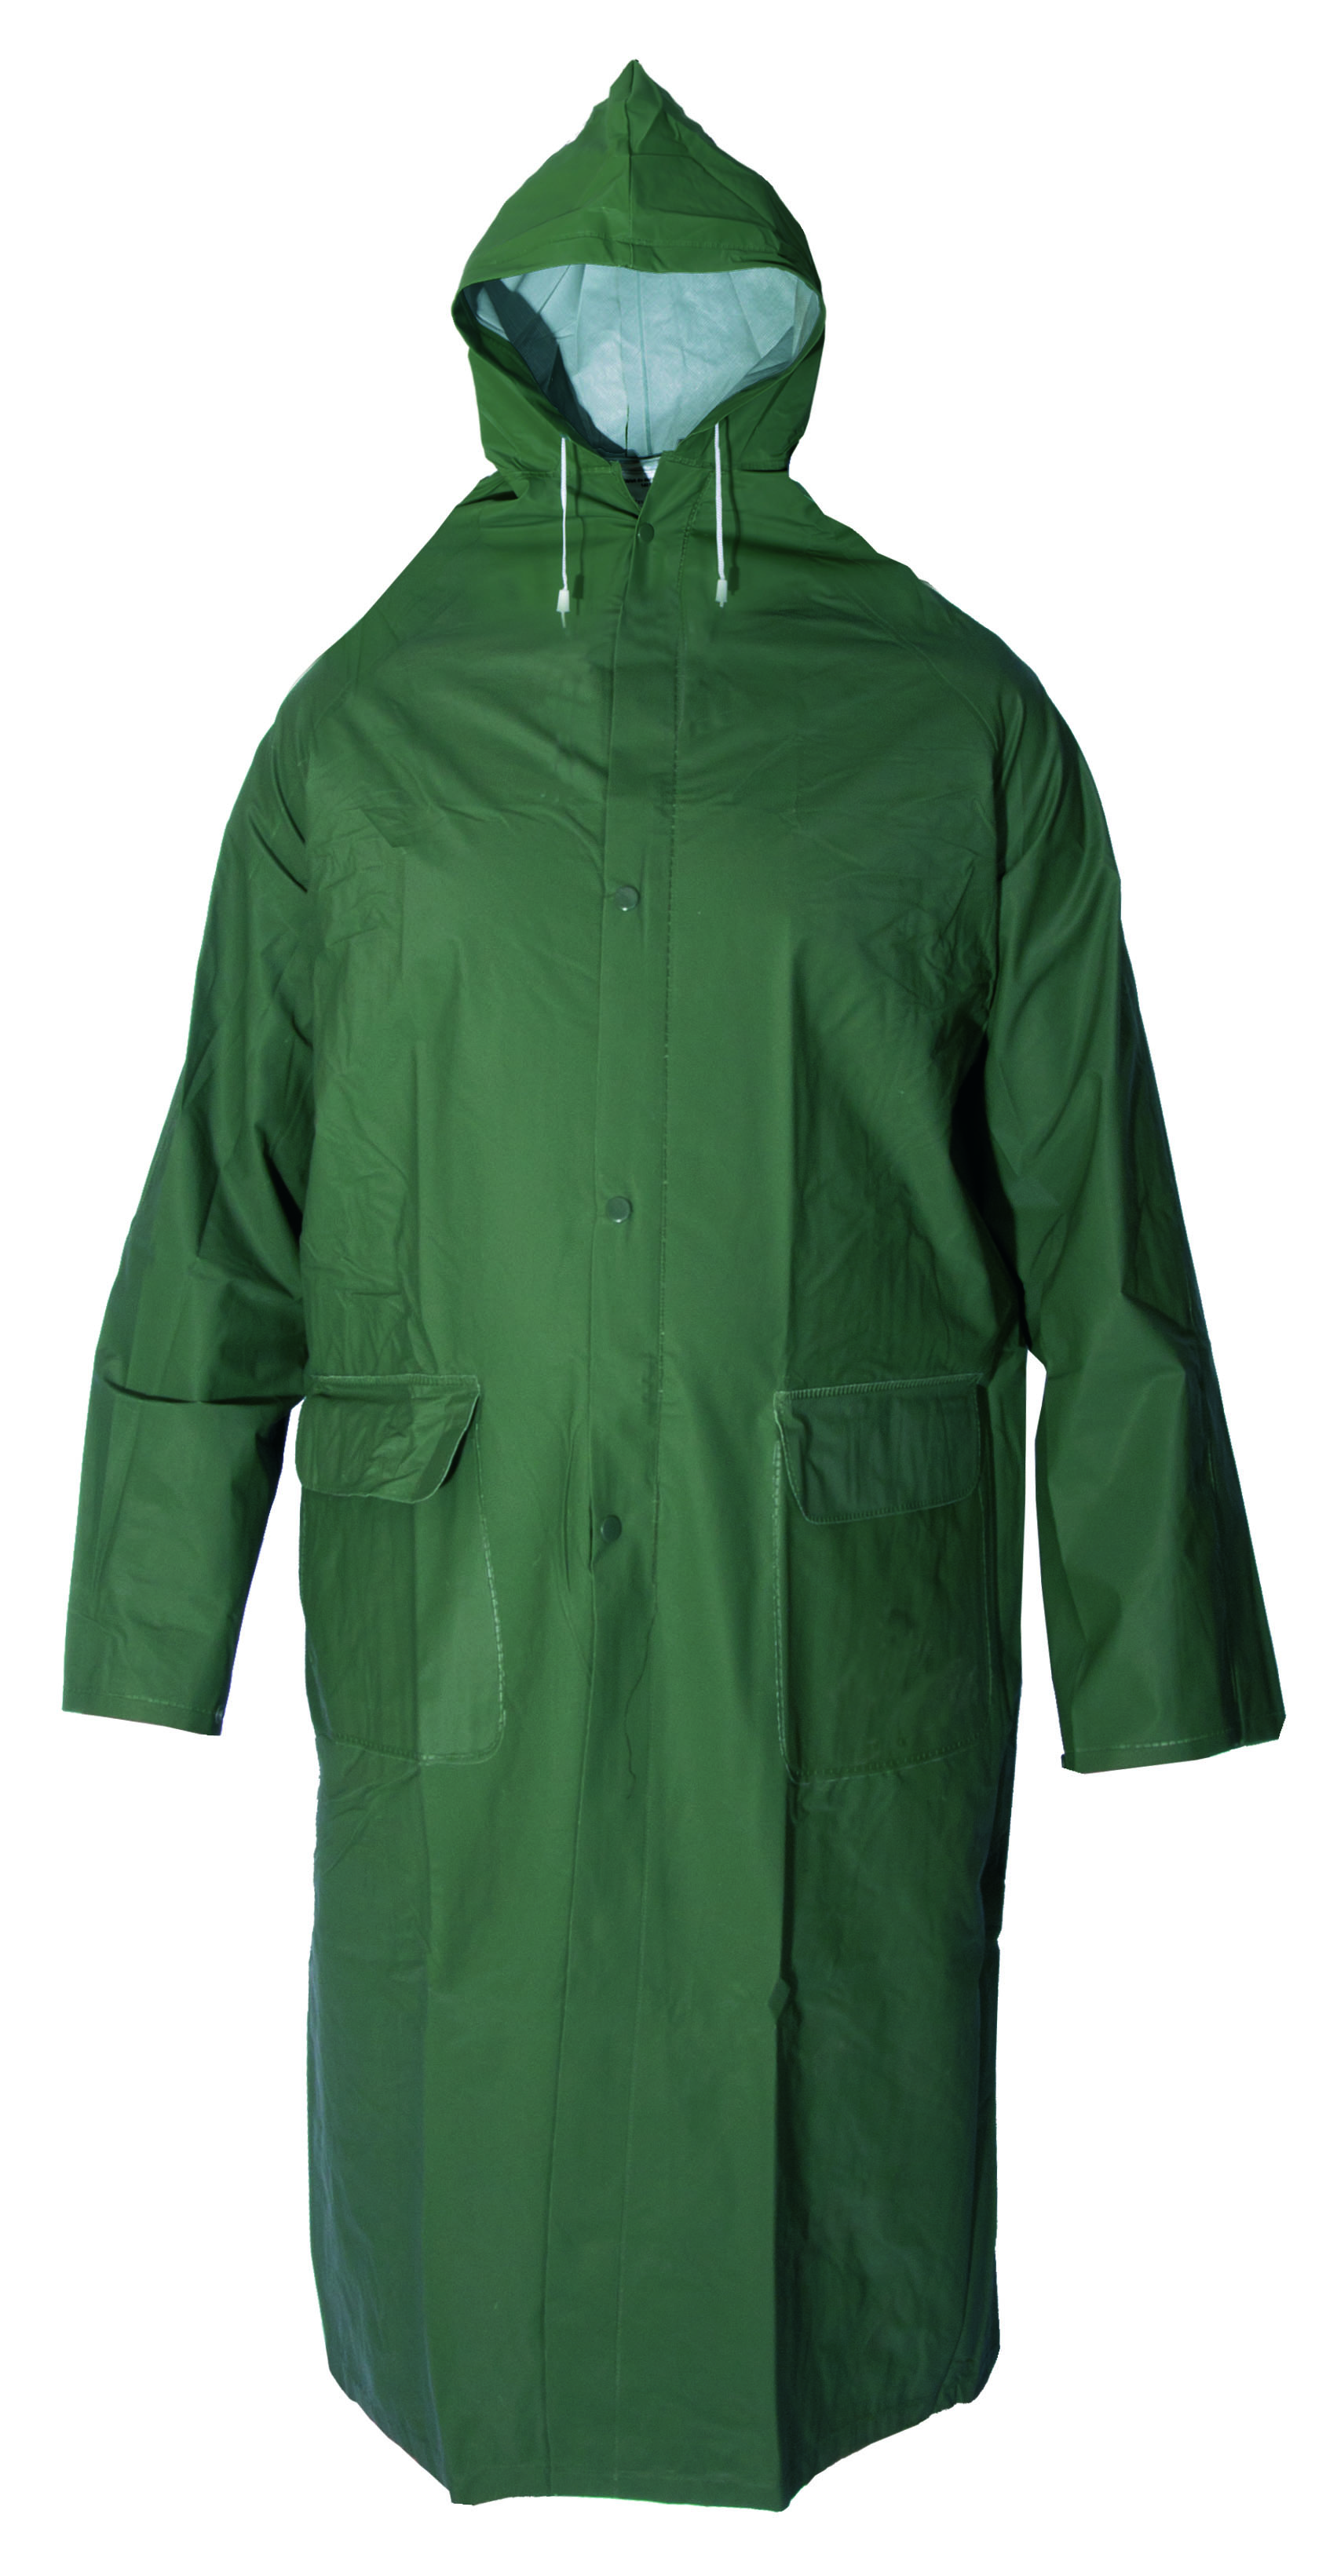 plášť do deště, s kapucí, zelený, velikost XXL 0.15 Kg TOP Sklad4 600244 3